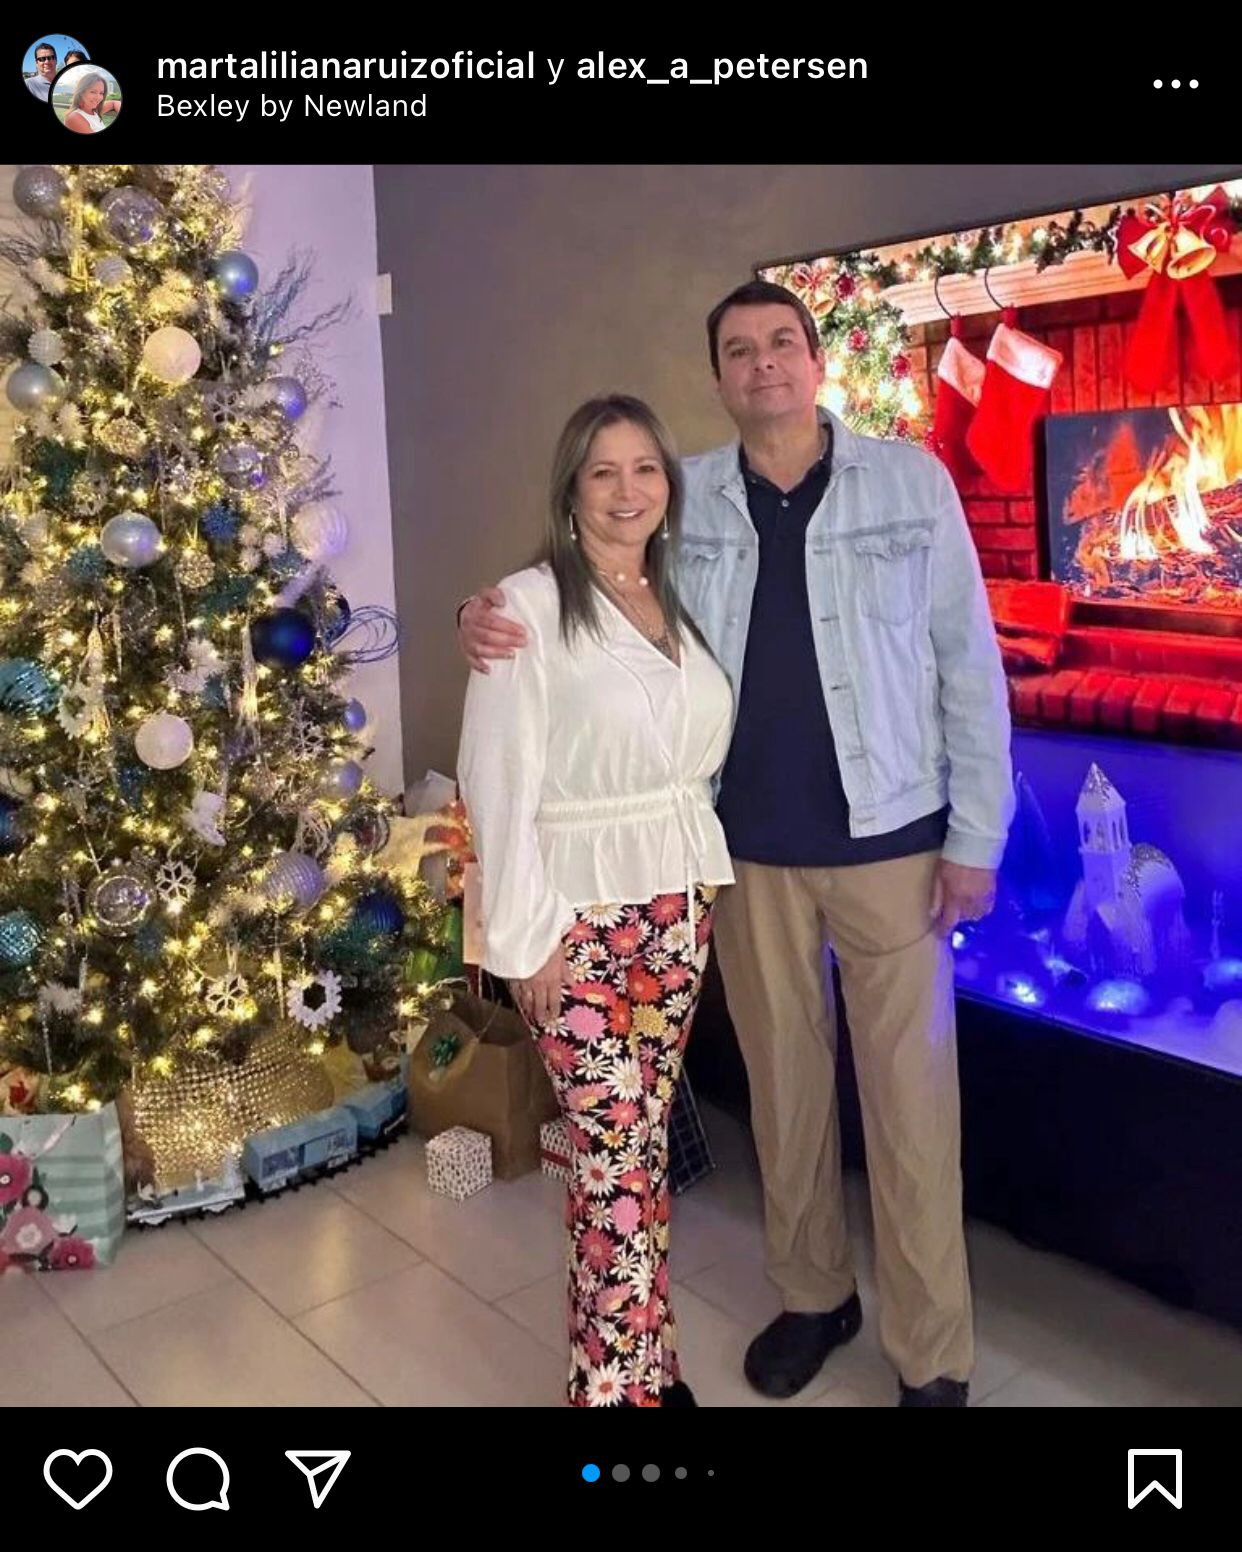 Marta Liliana Ruíz acompañada por su esposo durante las celebraciones de Navidad. @martalilianaruizoficial/Instagram